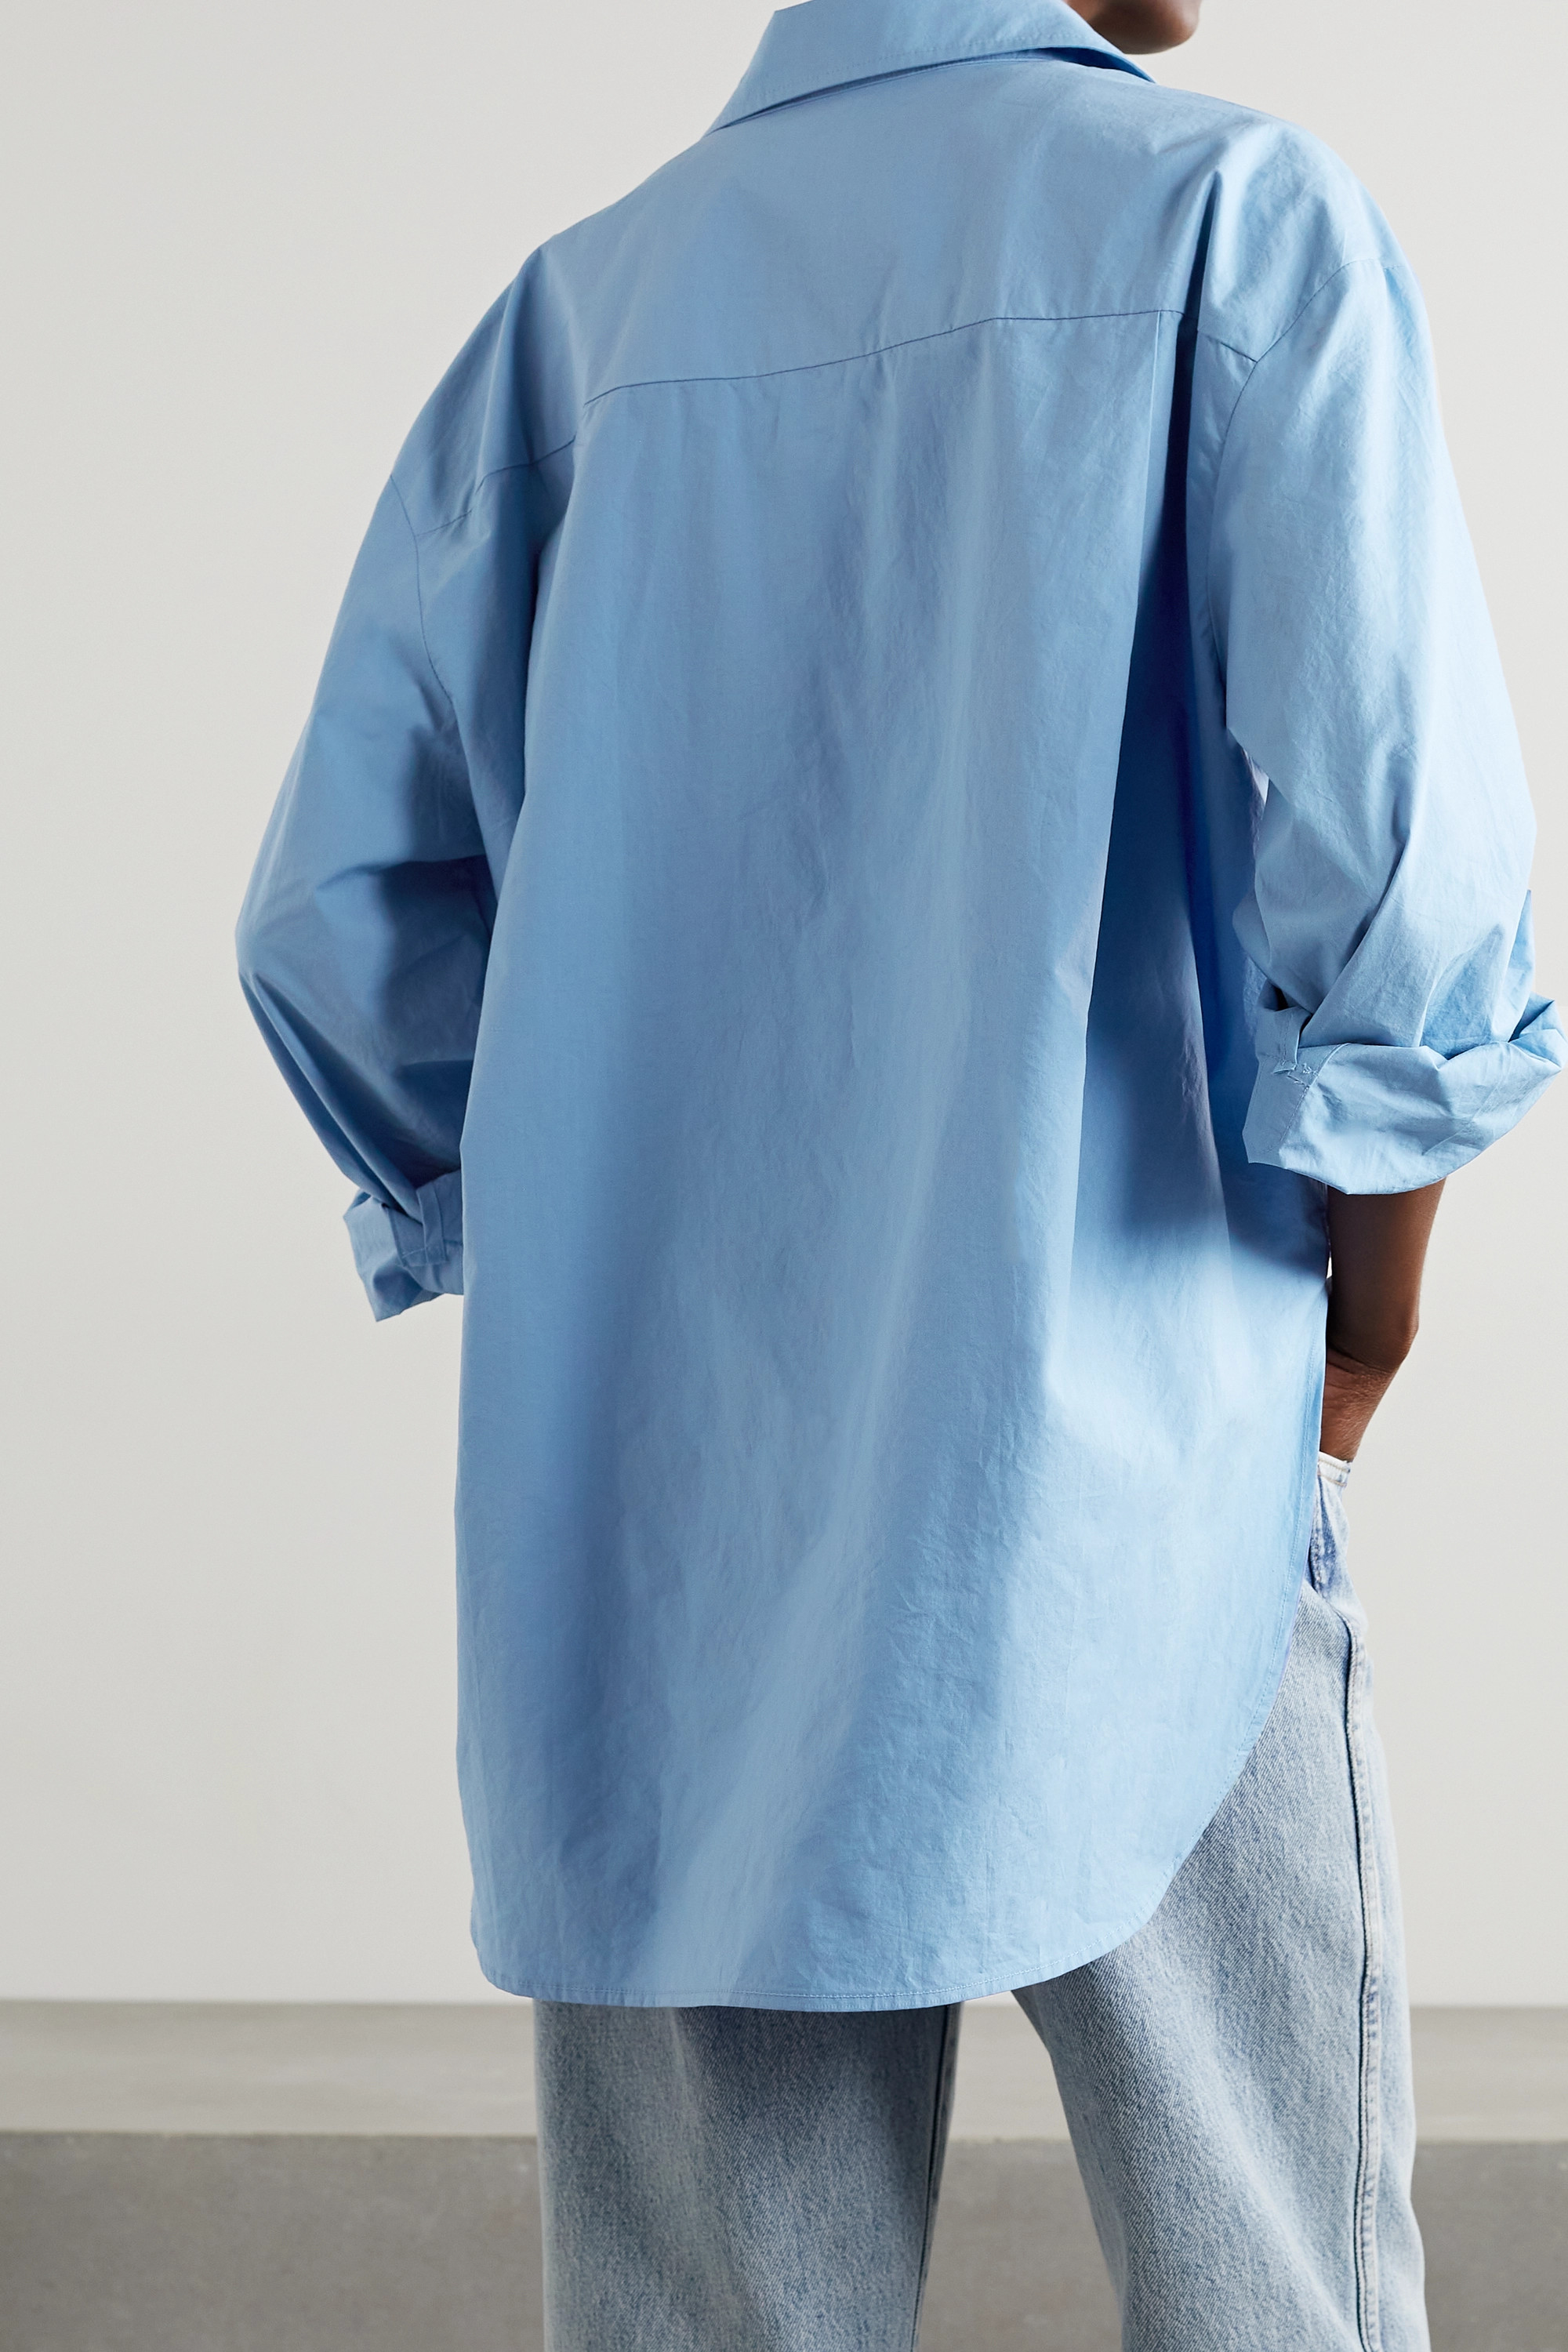 FRANKIE SHOP рубашка Lui из органического хлопка и поплина, синий фото